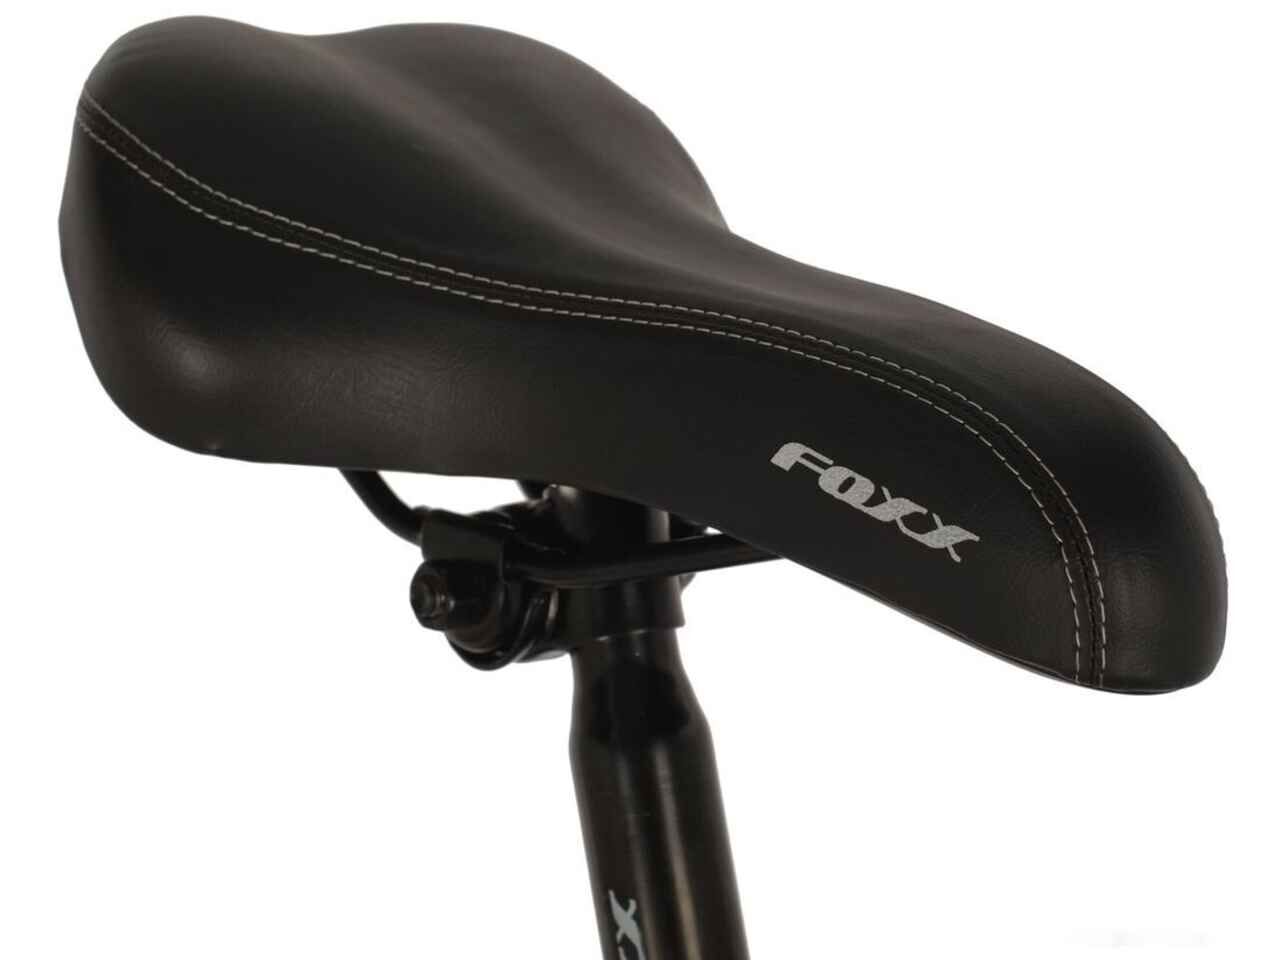 Велосипед Foxx Matrix 26 р.18 2021 (черный)